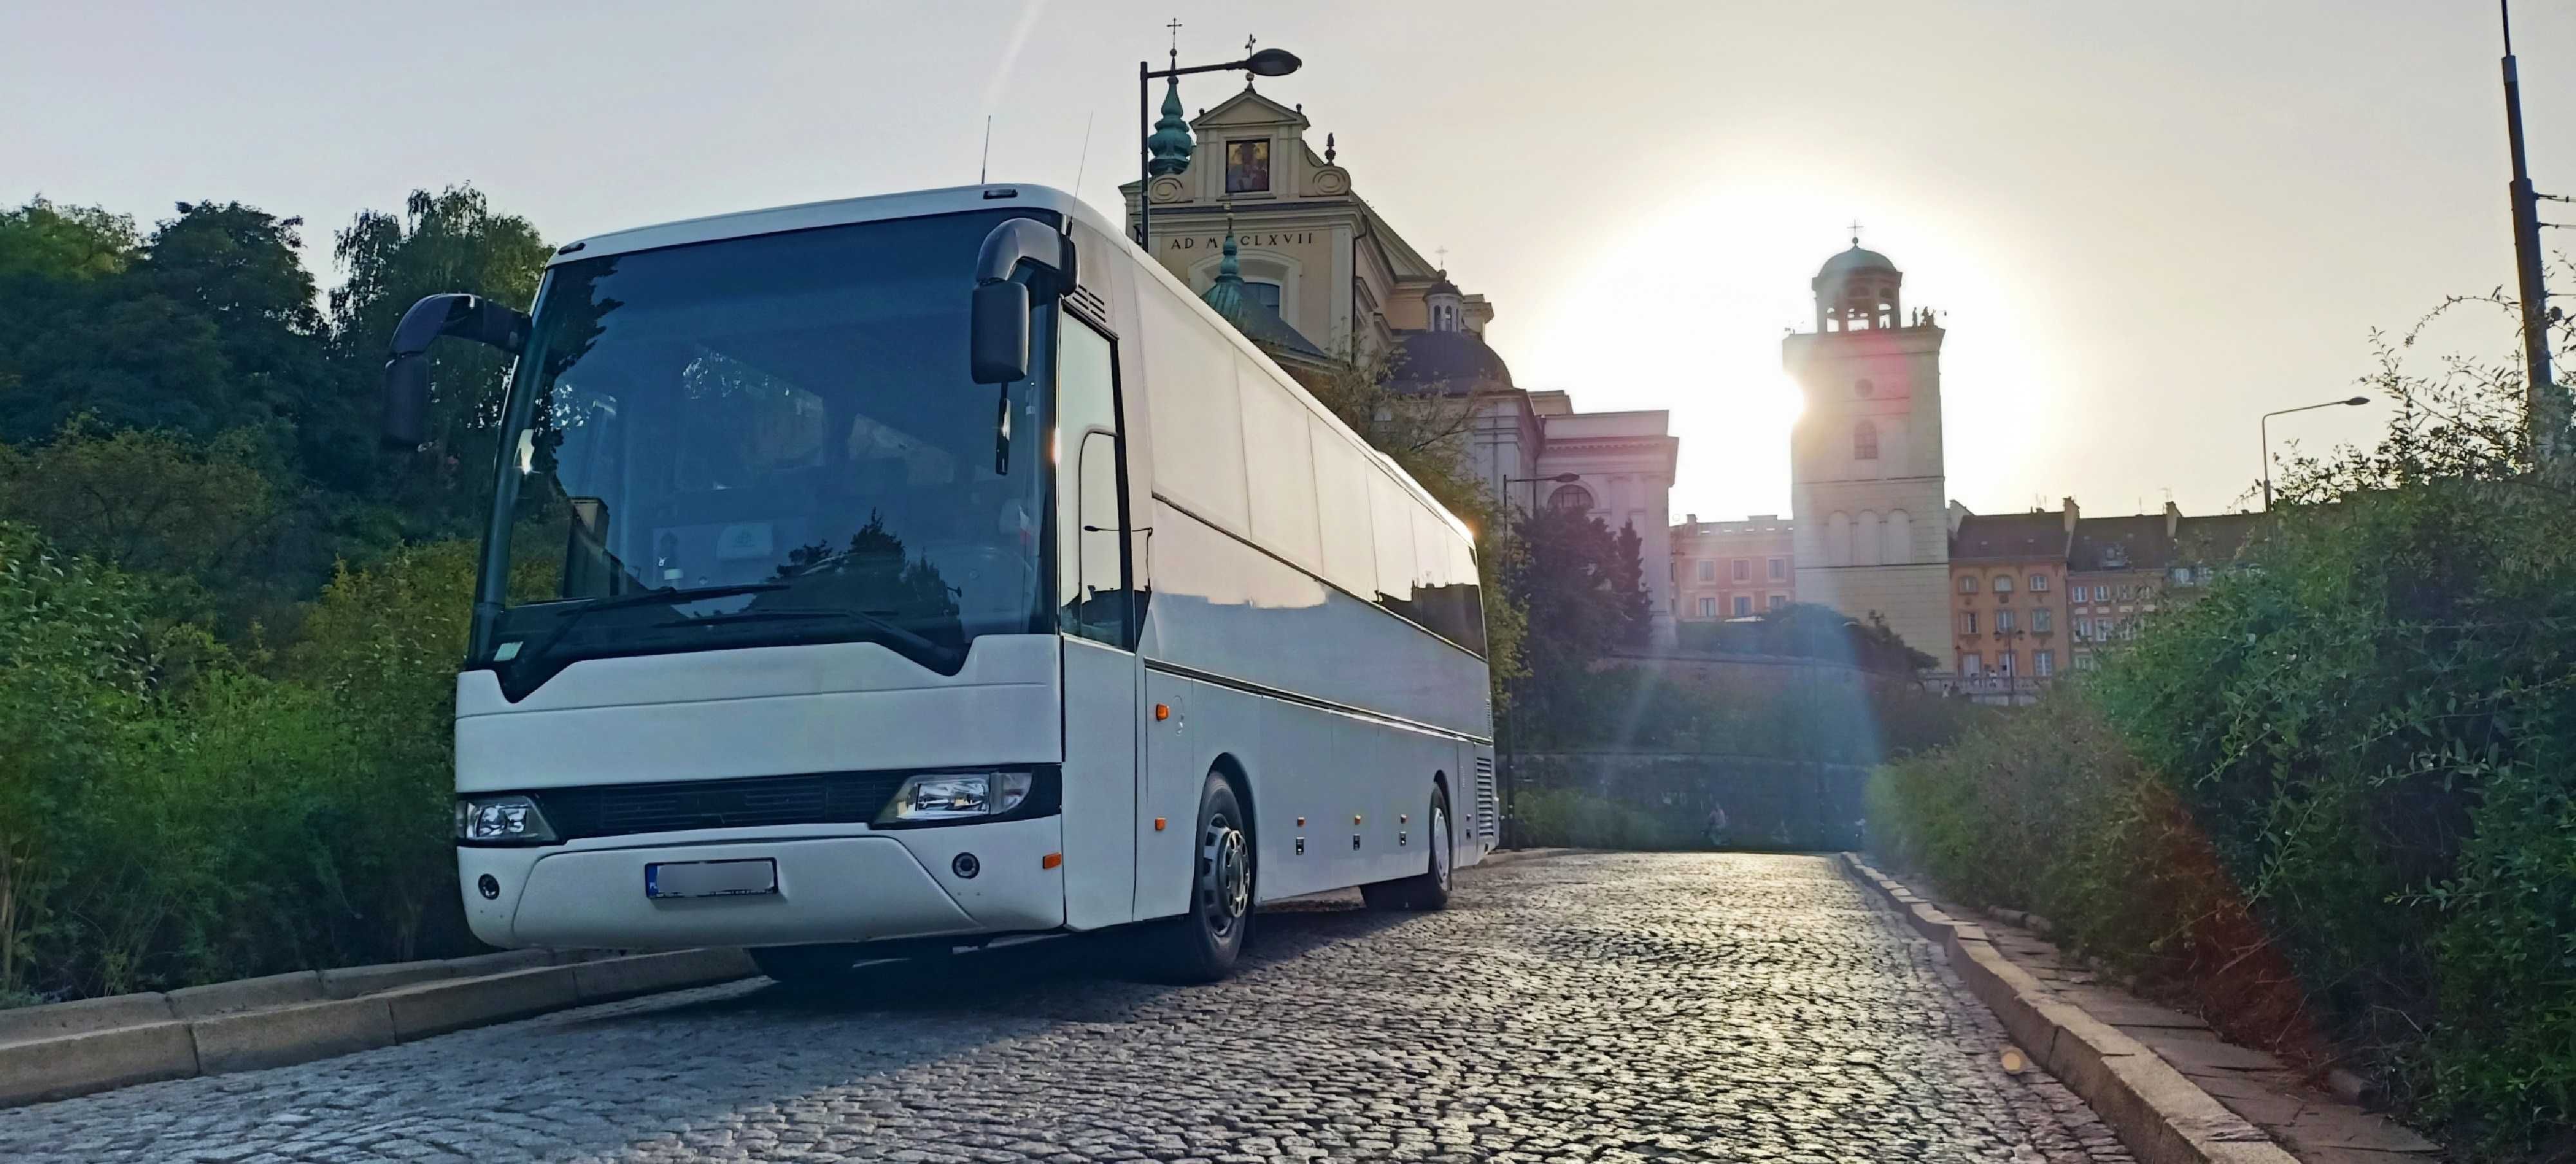 Wynajem Autokarów Busów Warszawa - Przewozy Autokarowe Orłowscy